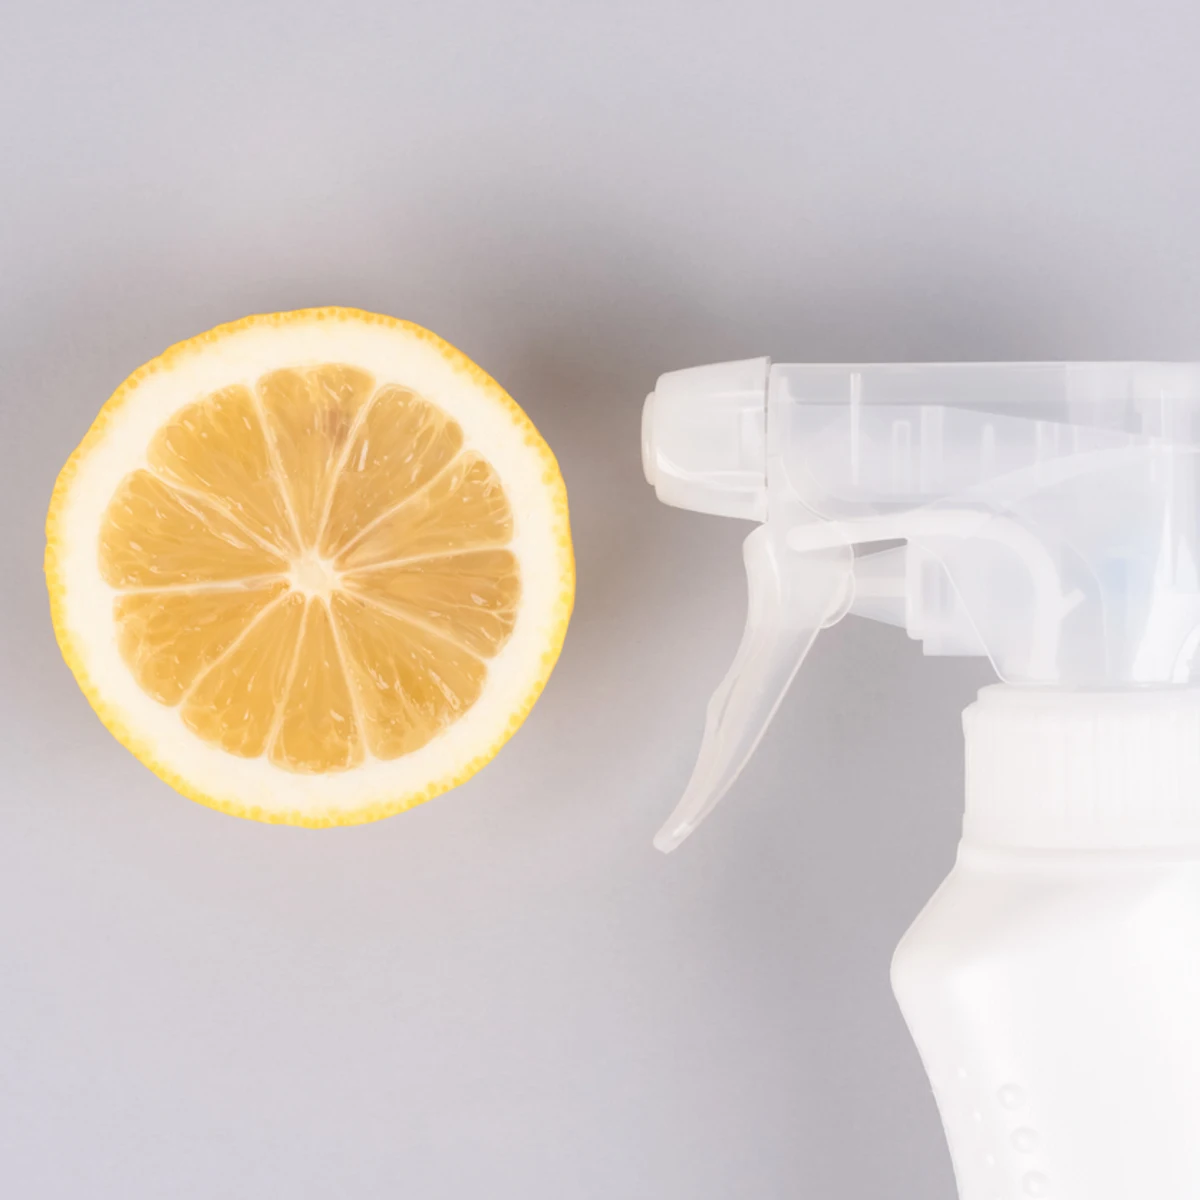 El vinagre, el aliado perfecto para una limpieza sostenible y eficaz en tu  hogar